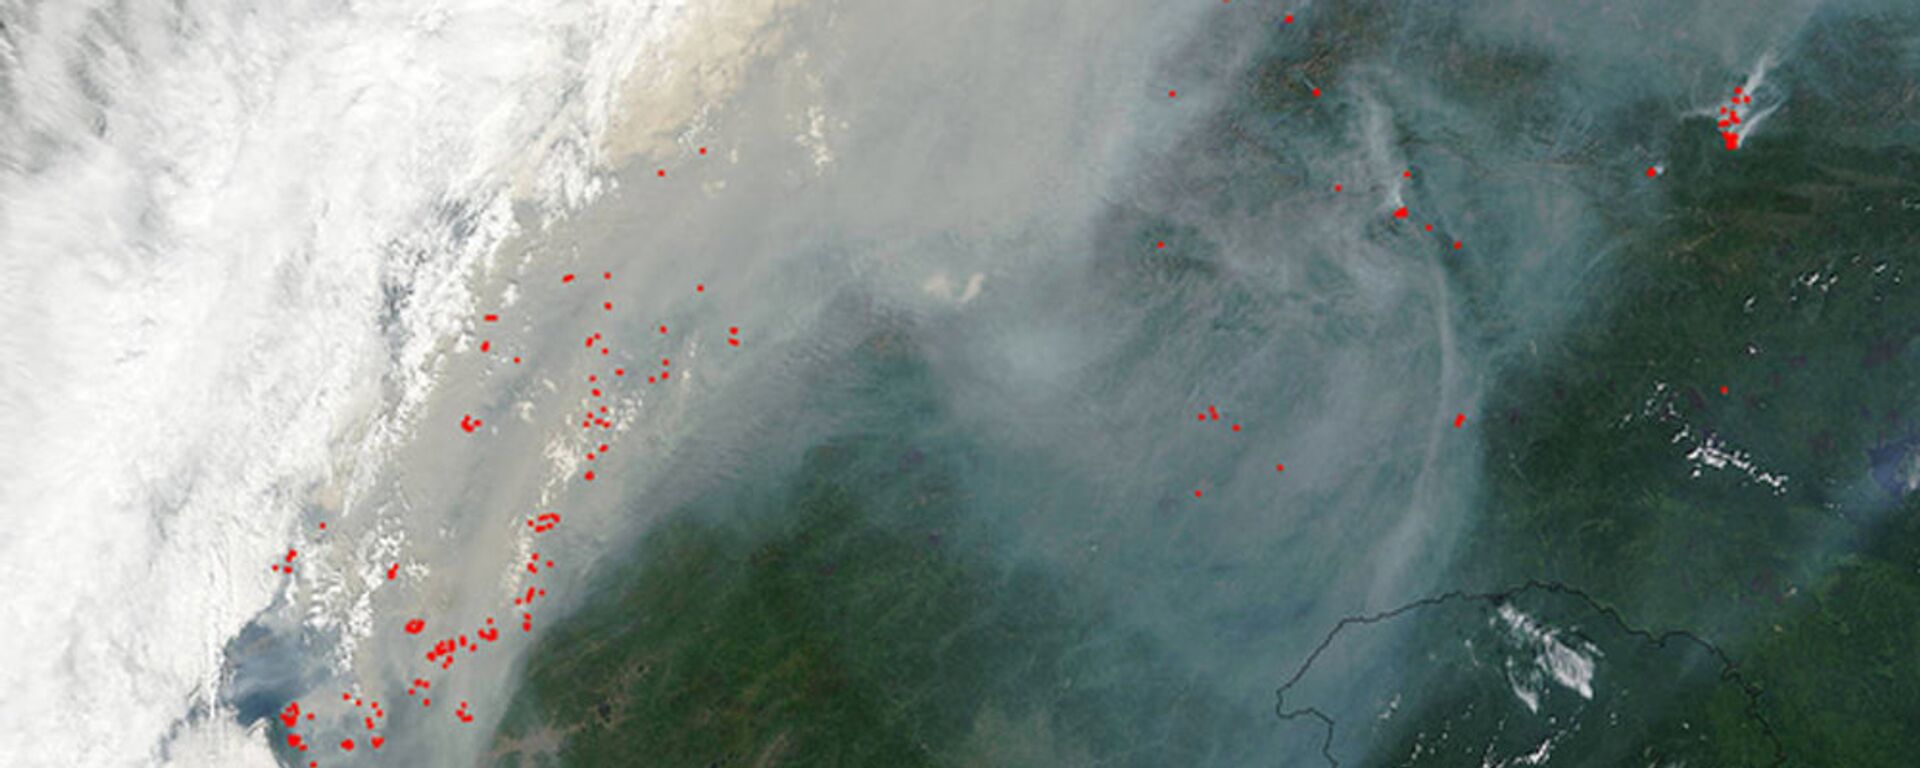 Спутниковый снимок лесных пожаров в Калифорнии - Sputnik Արմենիա, 1920, 19.08.2015